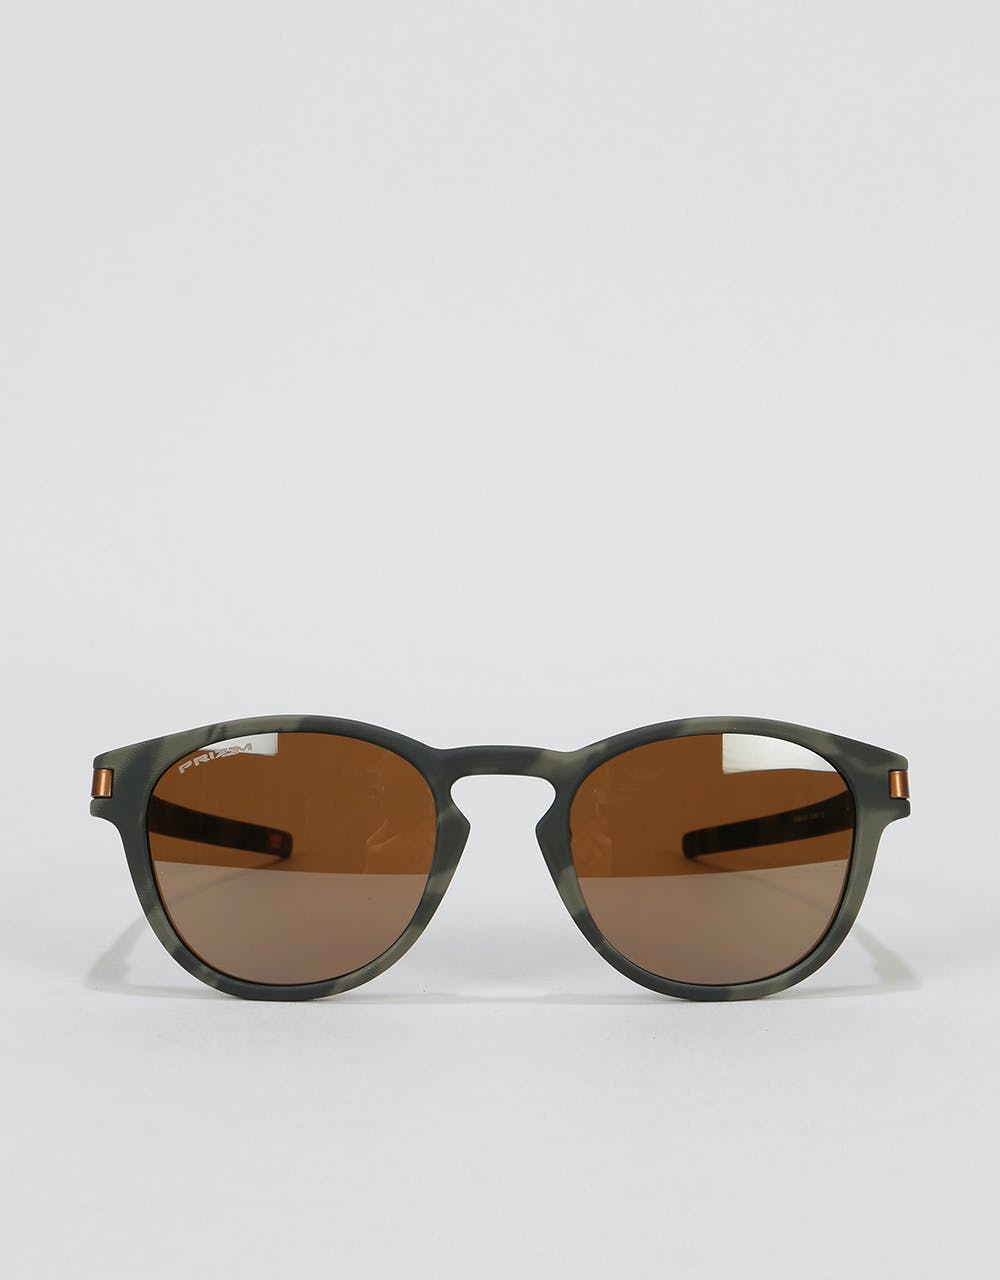 Oakley Latch Sunglasses - Olive Camo (Prizm Tungsten Lens)